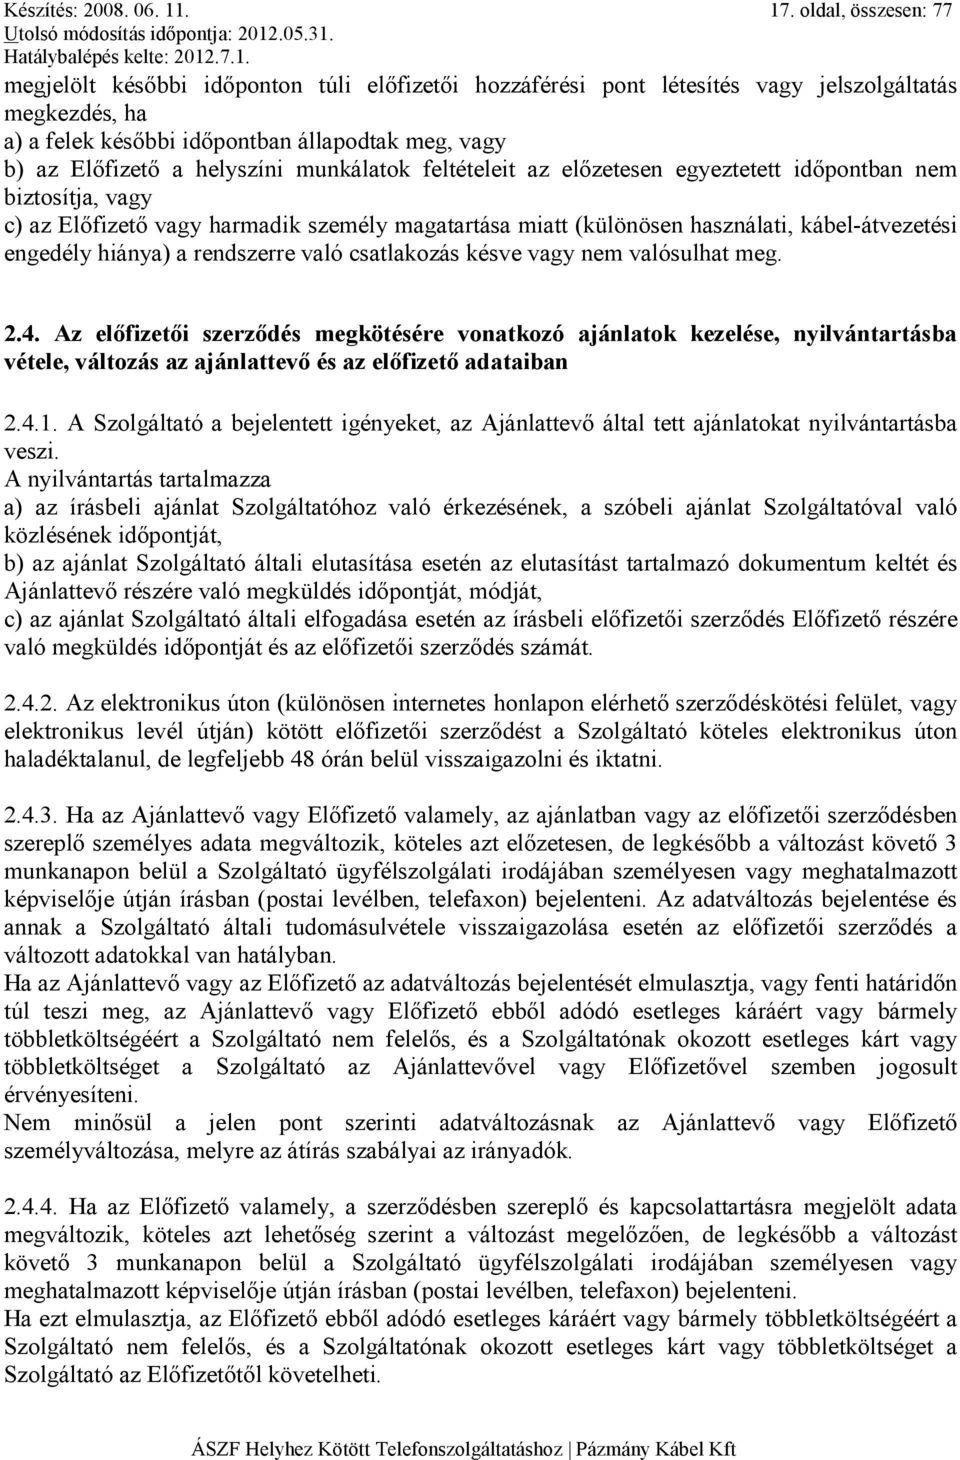 helyszíni munkálatok feltételeit az elızetesen egyeztetett idıpontban nem biztosítja, vagy c) az Elıfizetı vagy harmadik személy magatartása miatt (különösen használati, kábel-átvezetési engedély